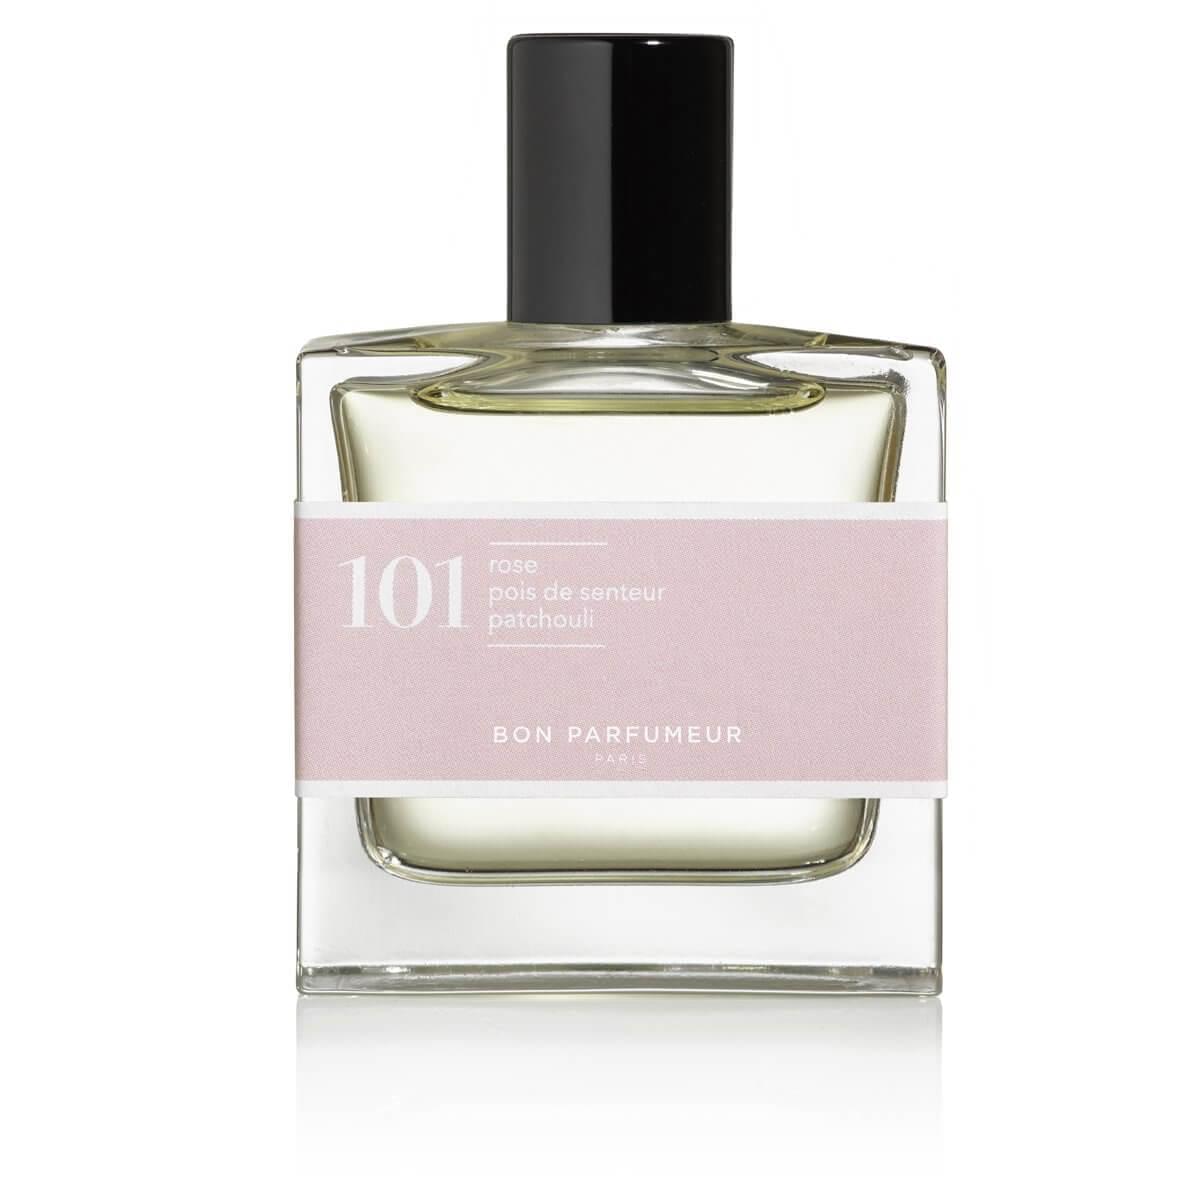 101 by Bon Parfumeur